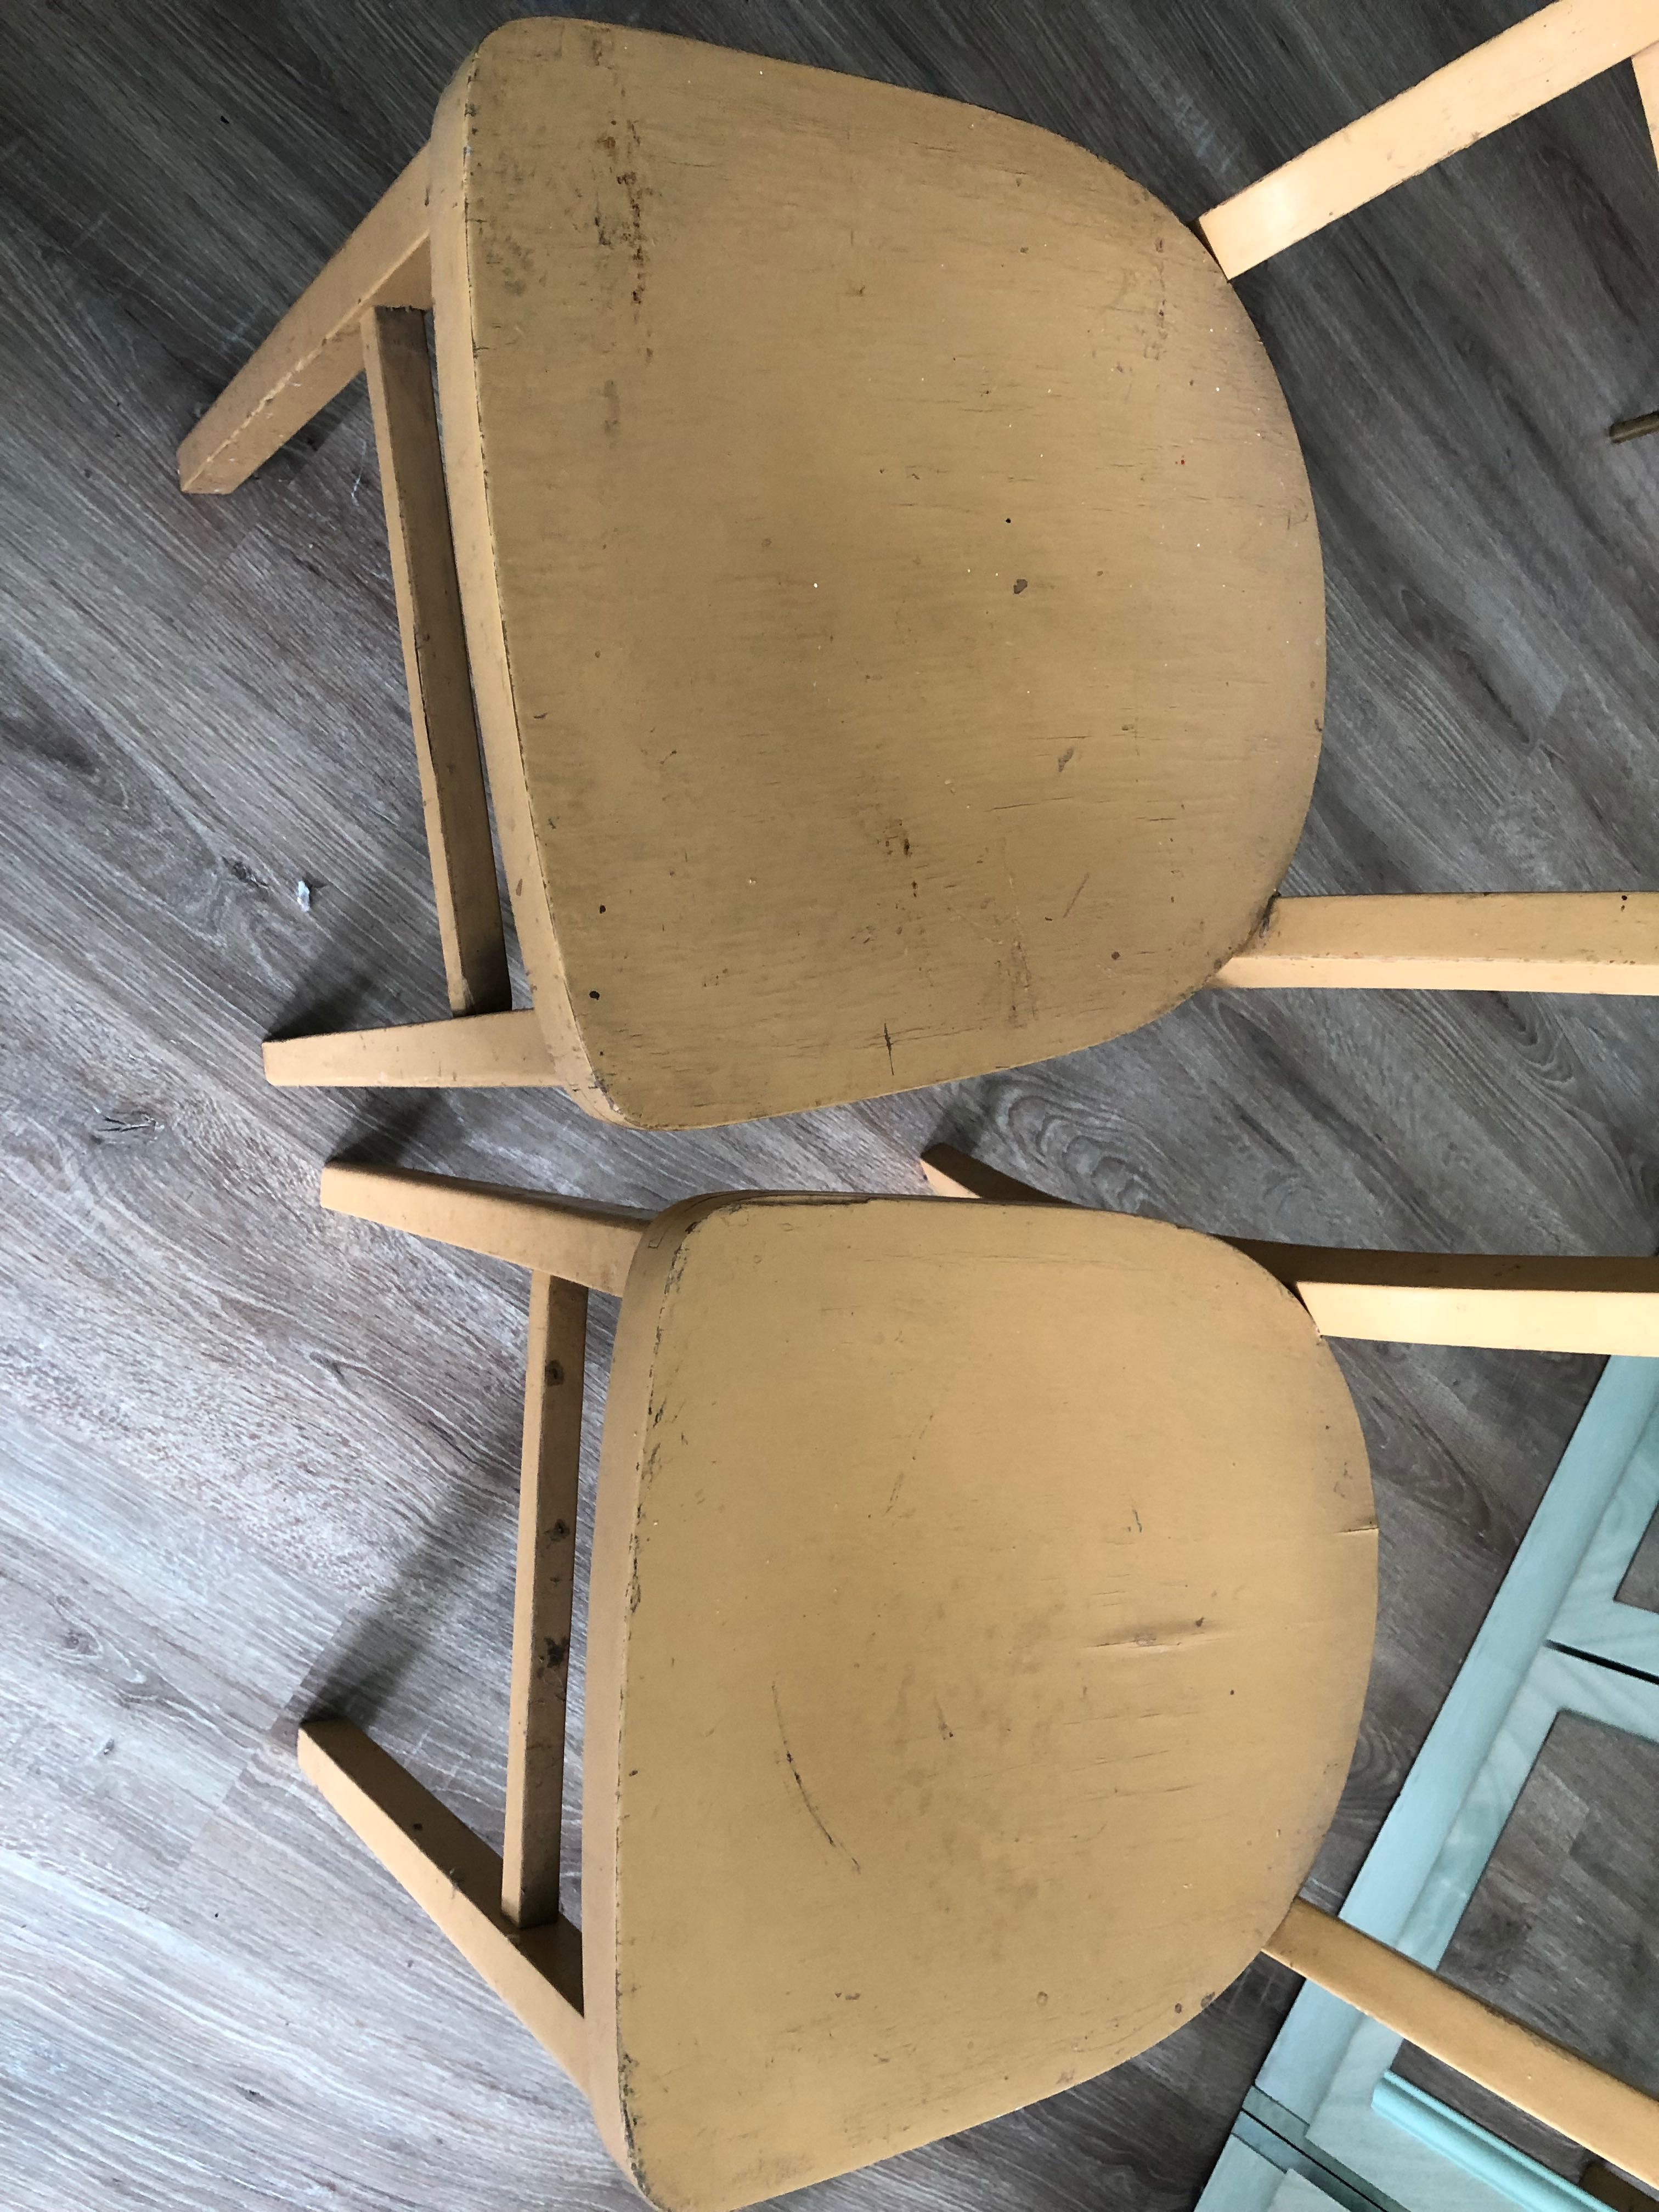 Krzesła drewniane 2 szt